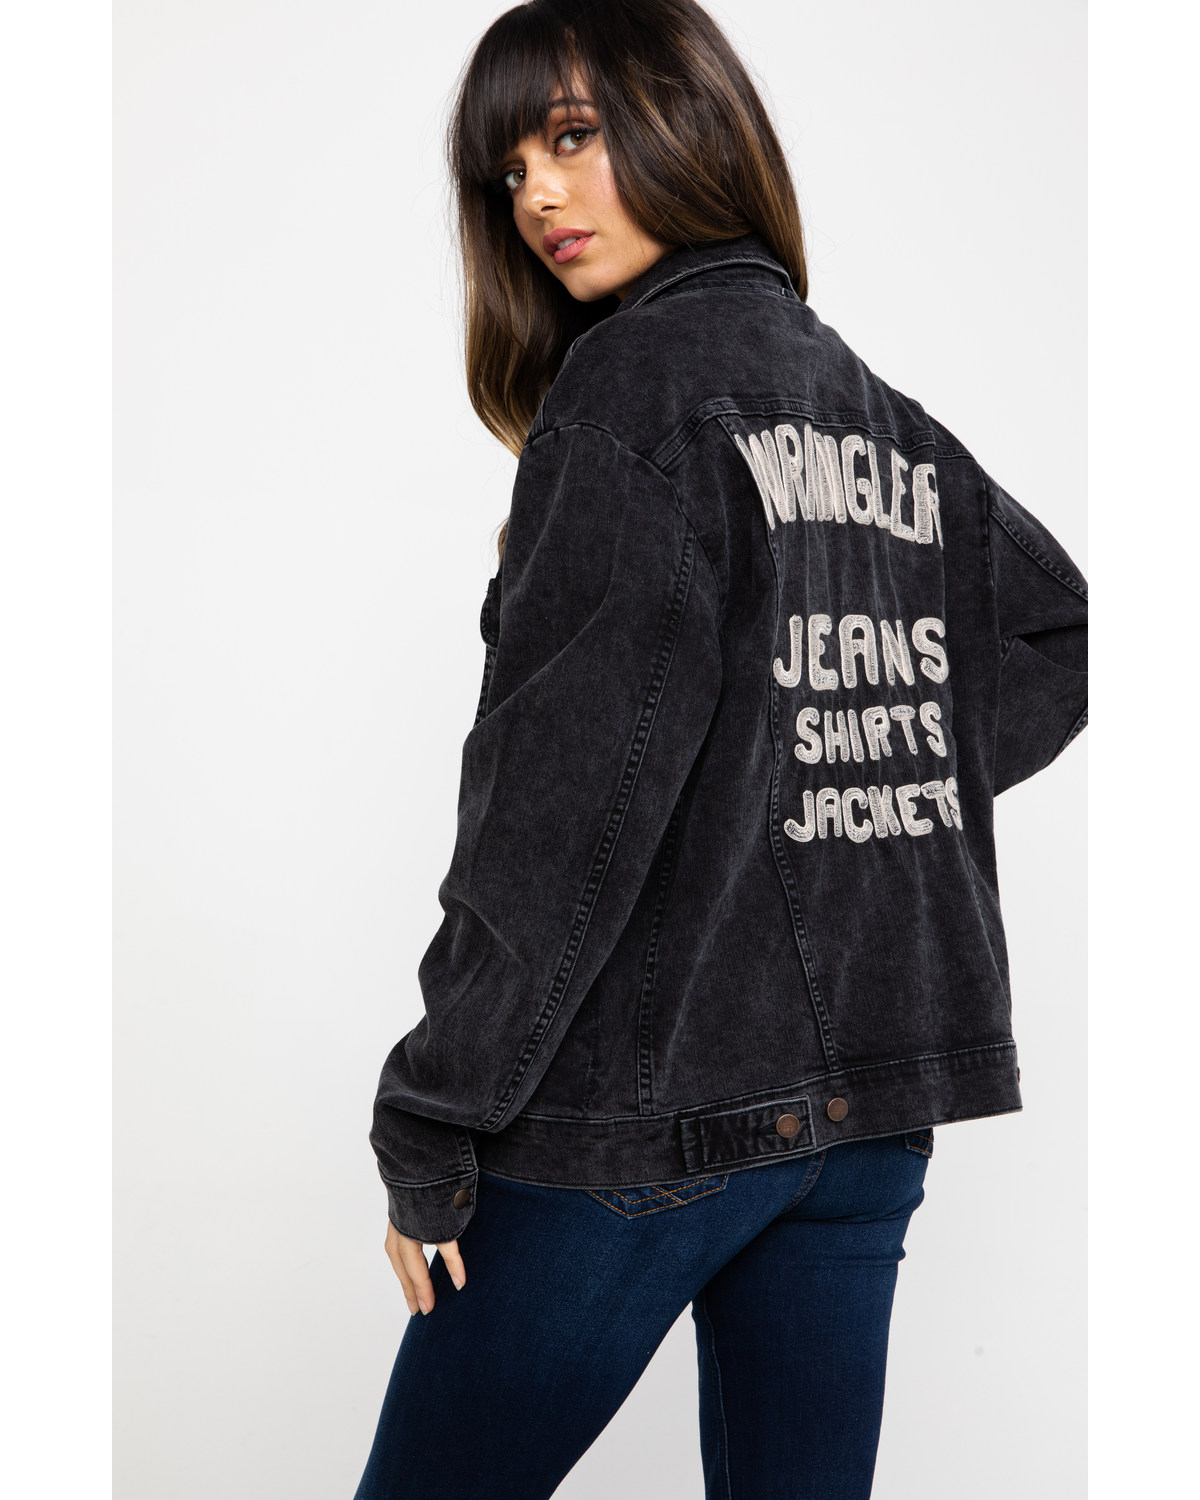 wrangler jeans shirts jackets